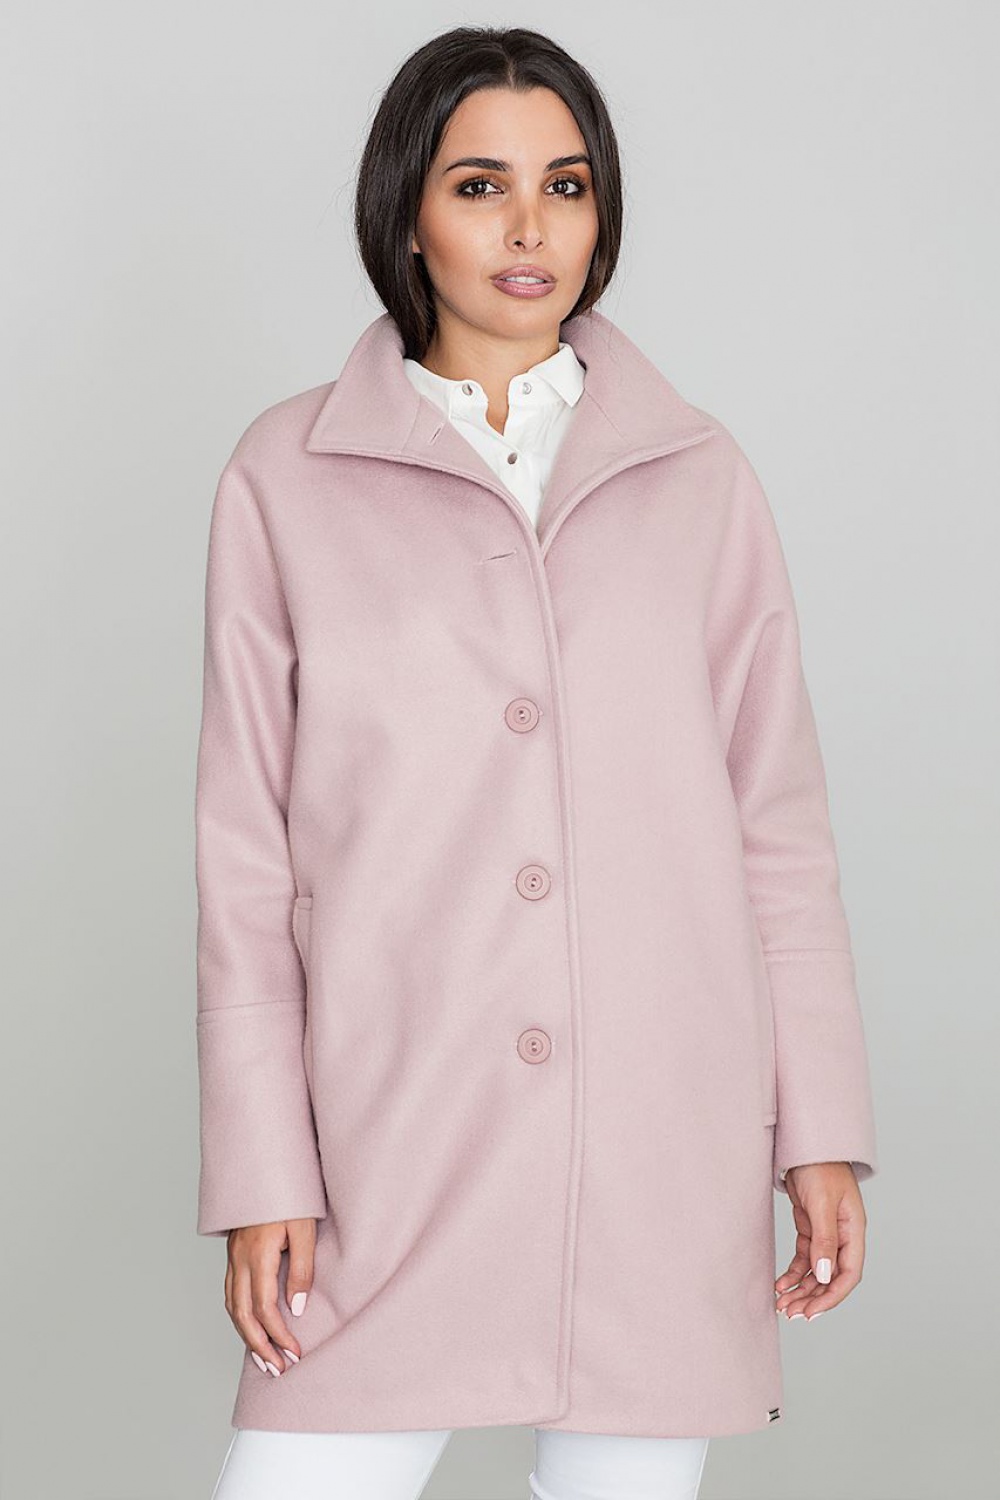  Coat model 111009 Figl  pink